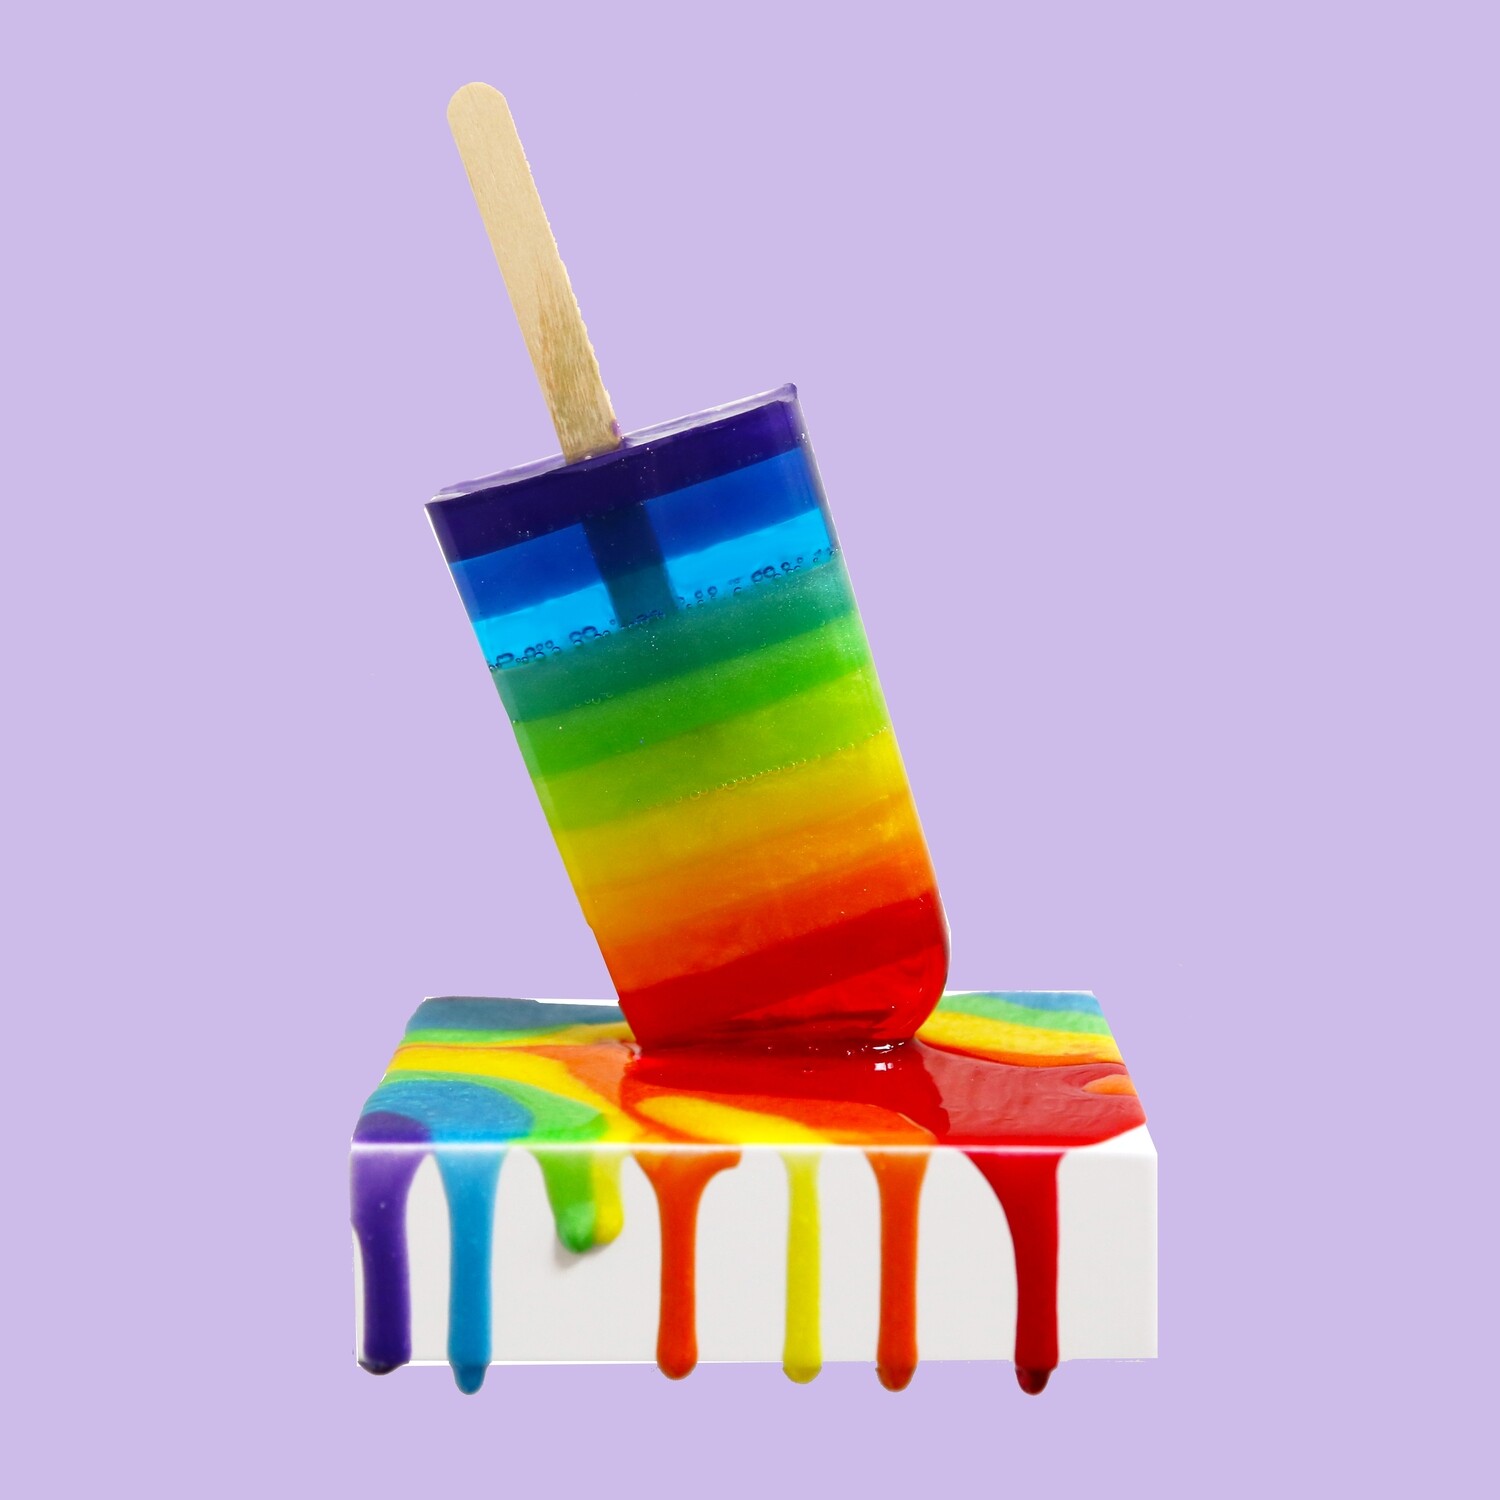 Melting Popsicle Art - Double Rainbow Shelfie - Original Melting Pops